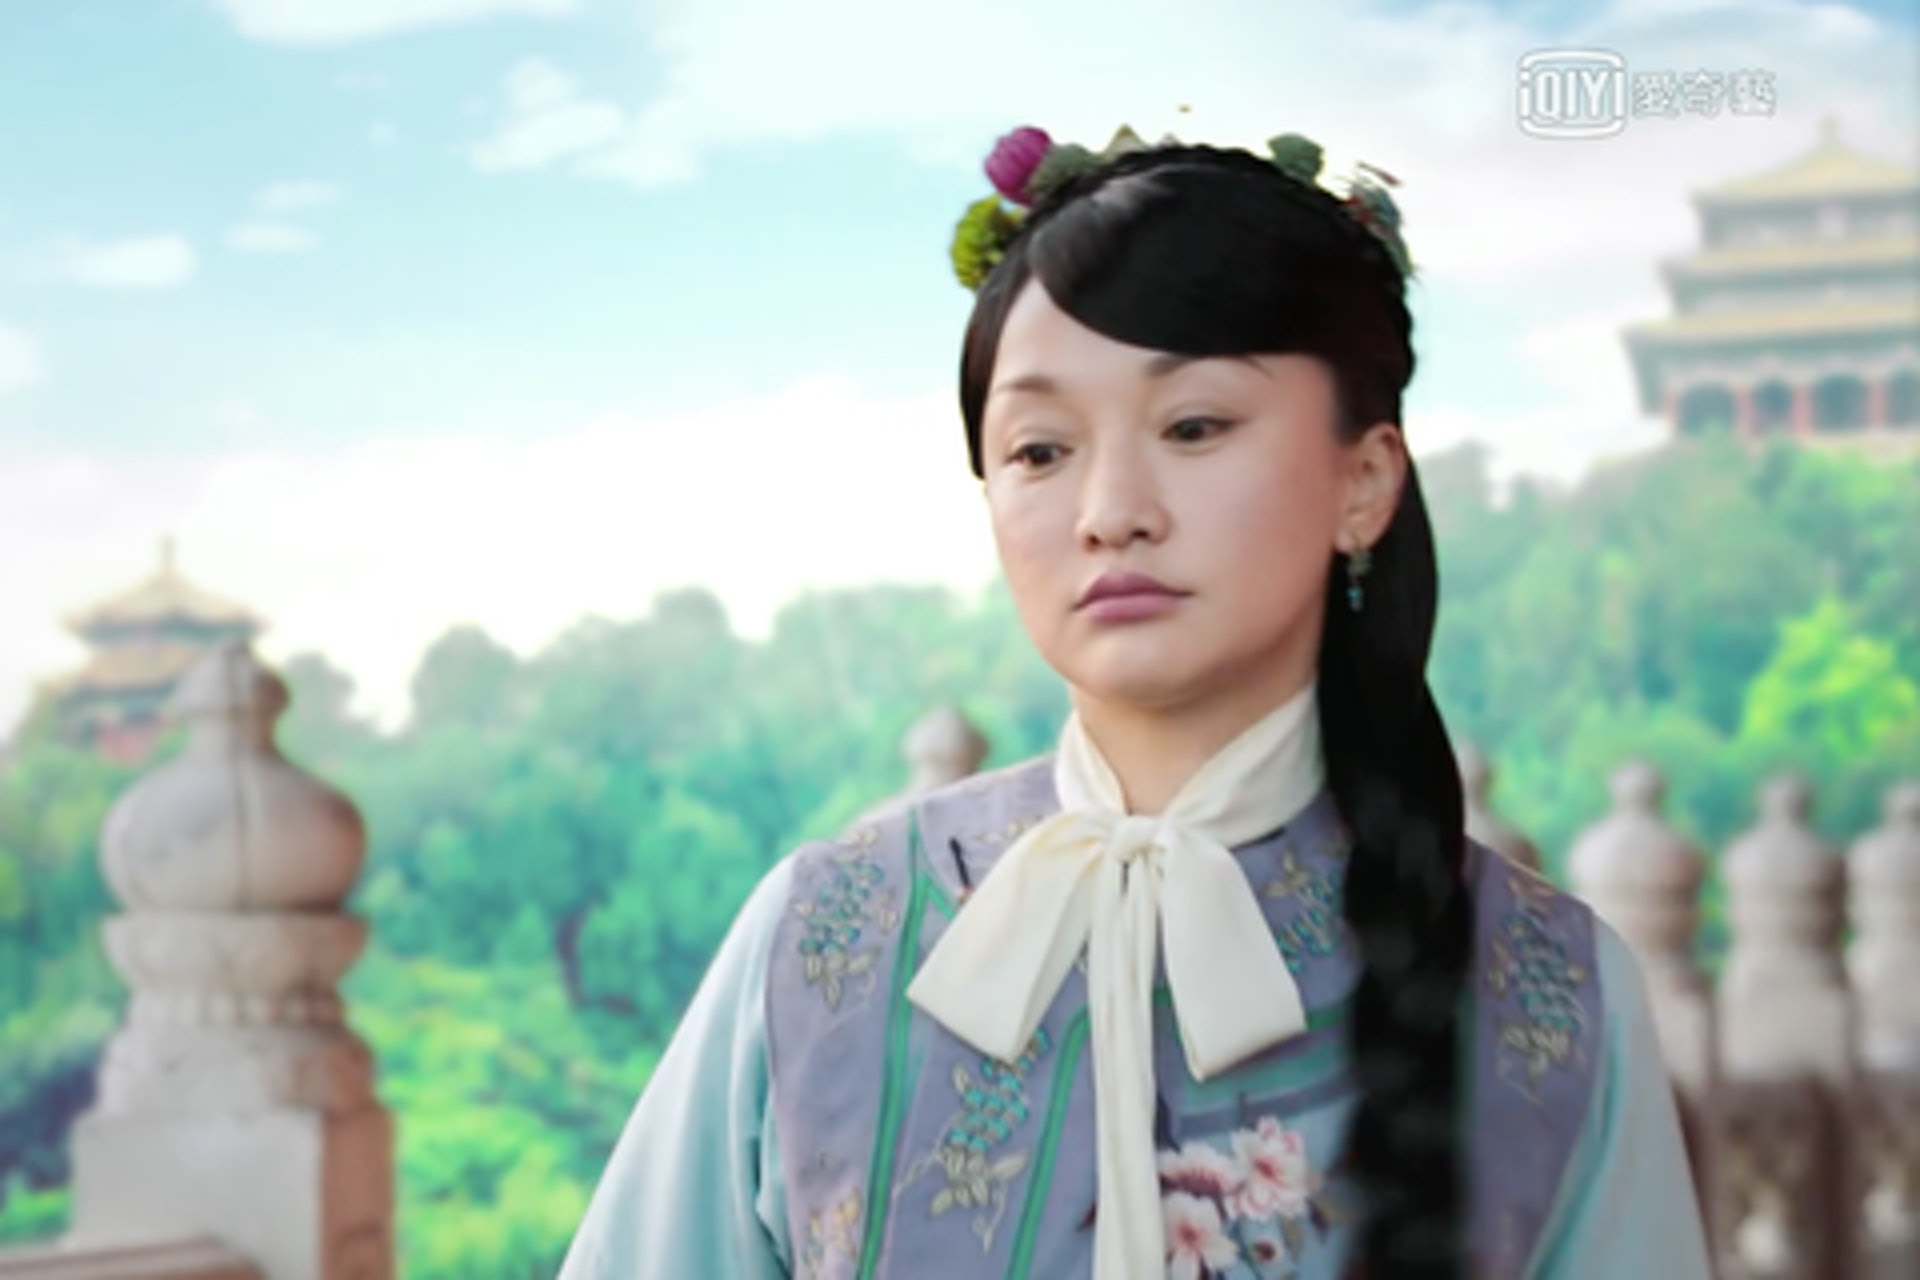 Tạo hình của Châu Tấn khi diễn cảnh thời niên thiếu của Kế Hoàng hậu bị 'ném đá' kịch liệt